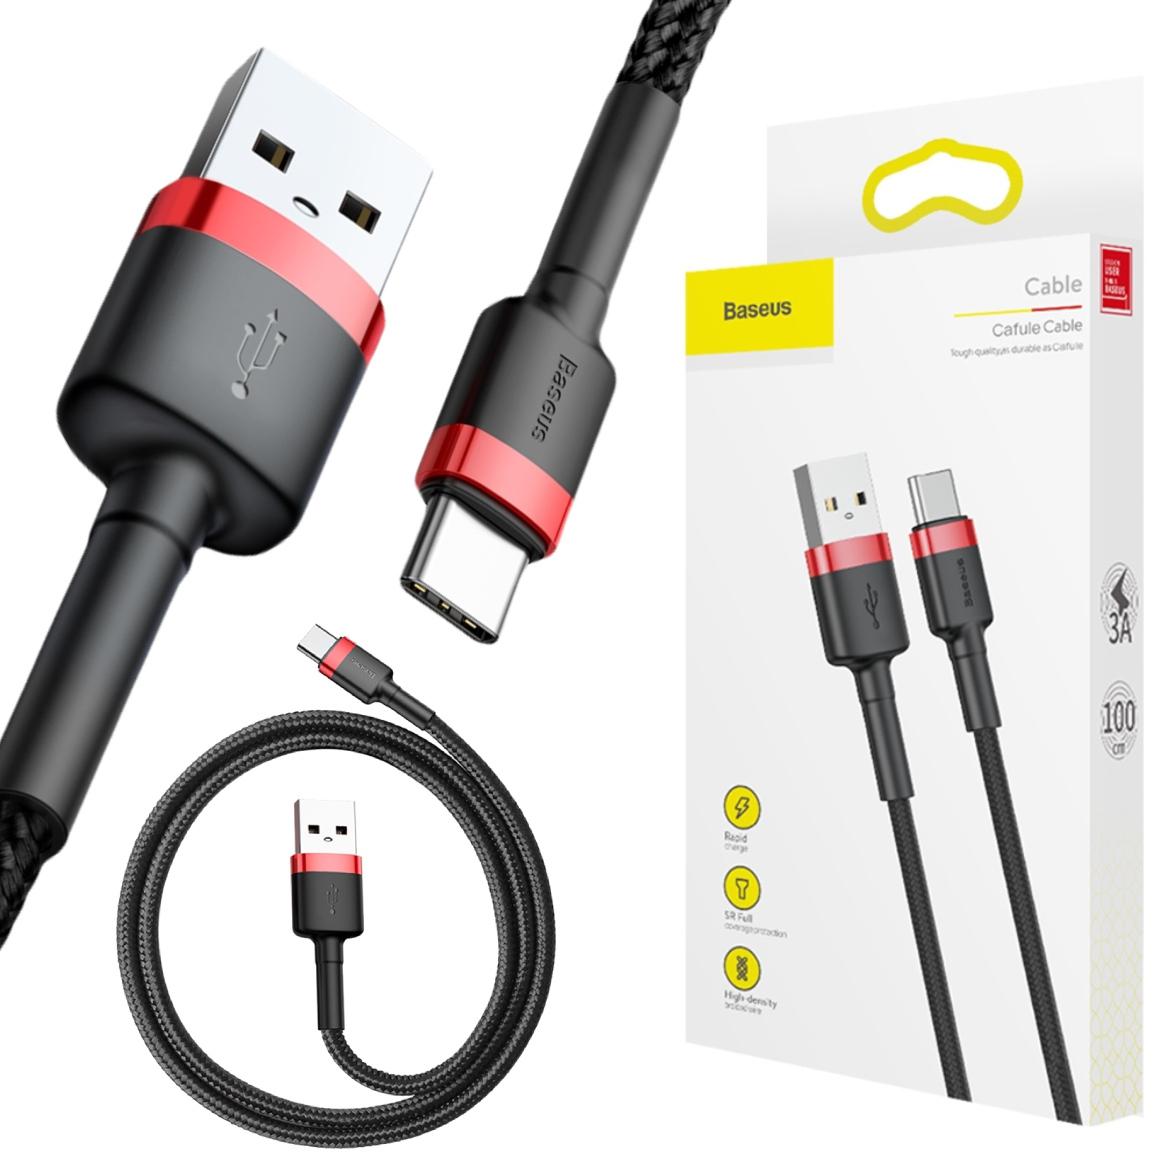 Baseus Cafule Cable nylonowy kabel USB / USB-C QC 3.0 3 A 1 m czarno-czerwony (CATKLF-B91) – najważniejsze cechy: